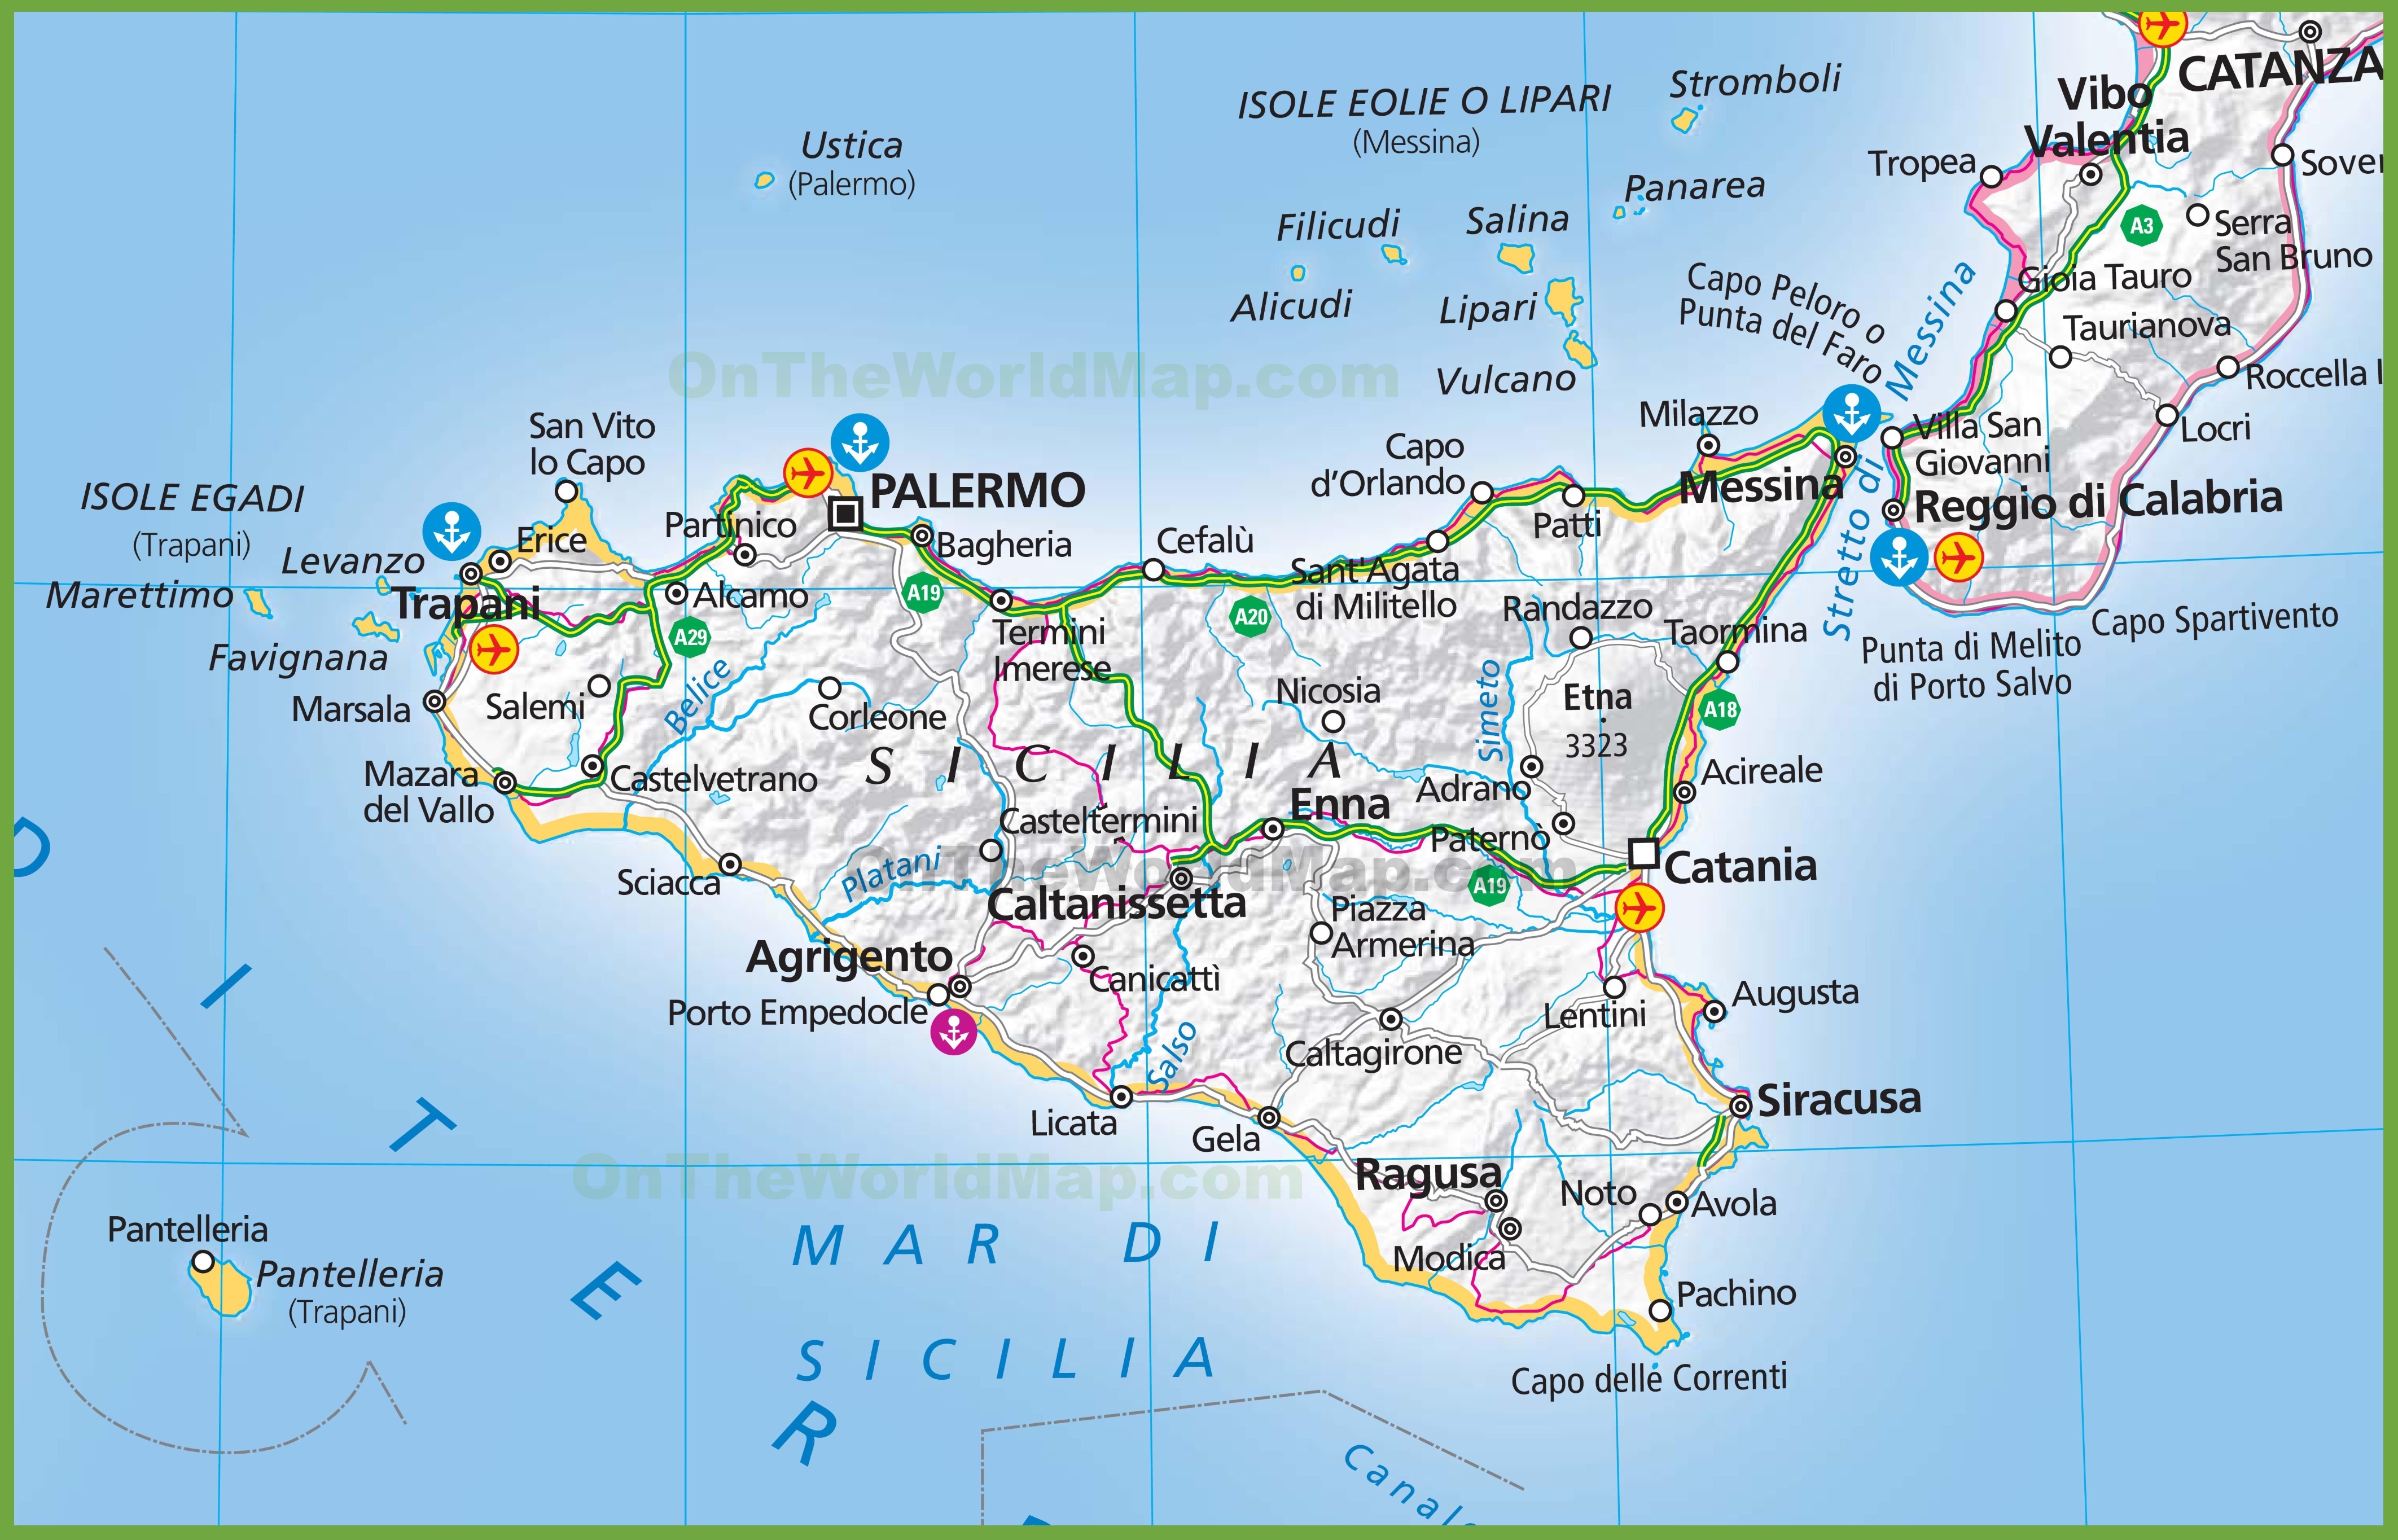 Torrente terdoppio map pa sicilia nash didan torrent